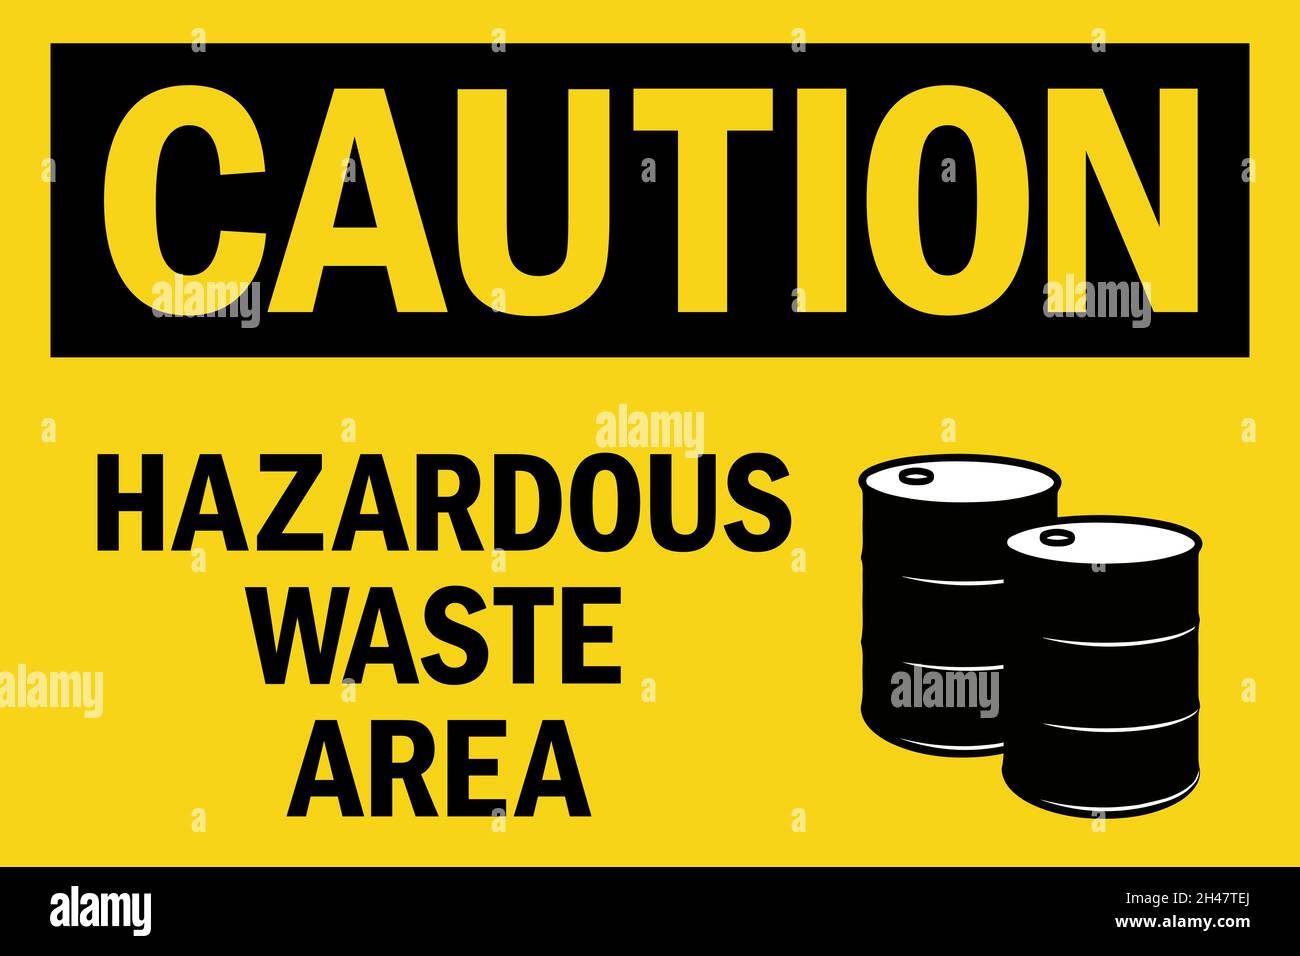 Hazardous waste label icon Stock-Vektorgrafiken kaufen - Alamy